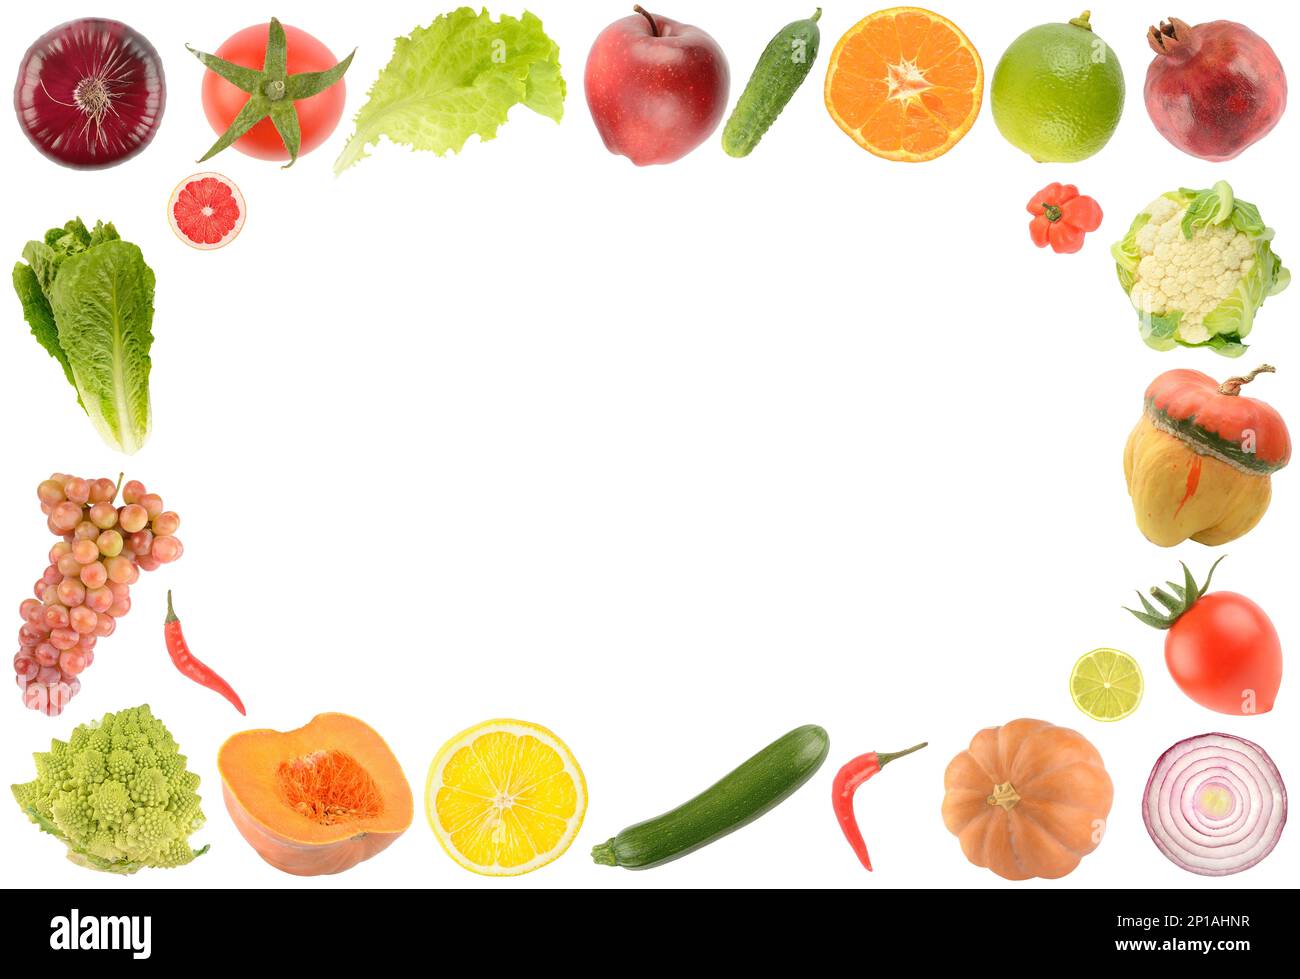 Incorniciare frutta fresca, verdura e bacche isolate su fondo bianco. Spazio libero per il testo. Foto Stock